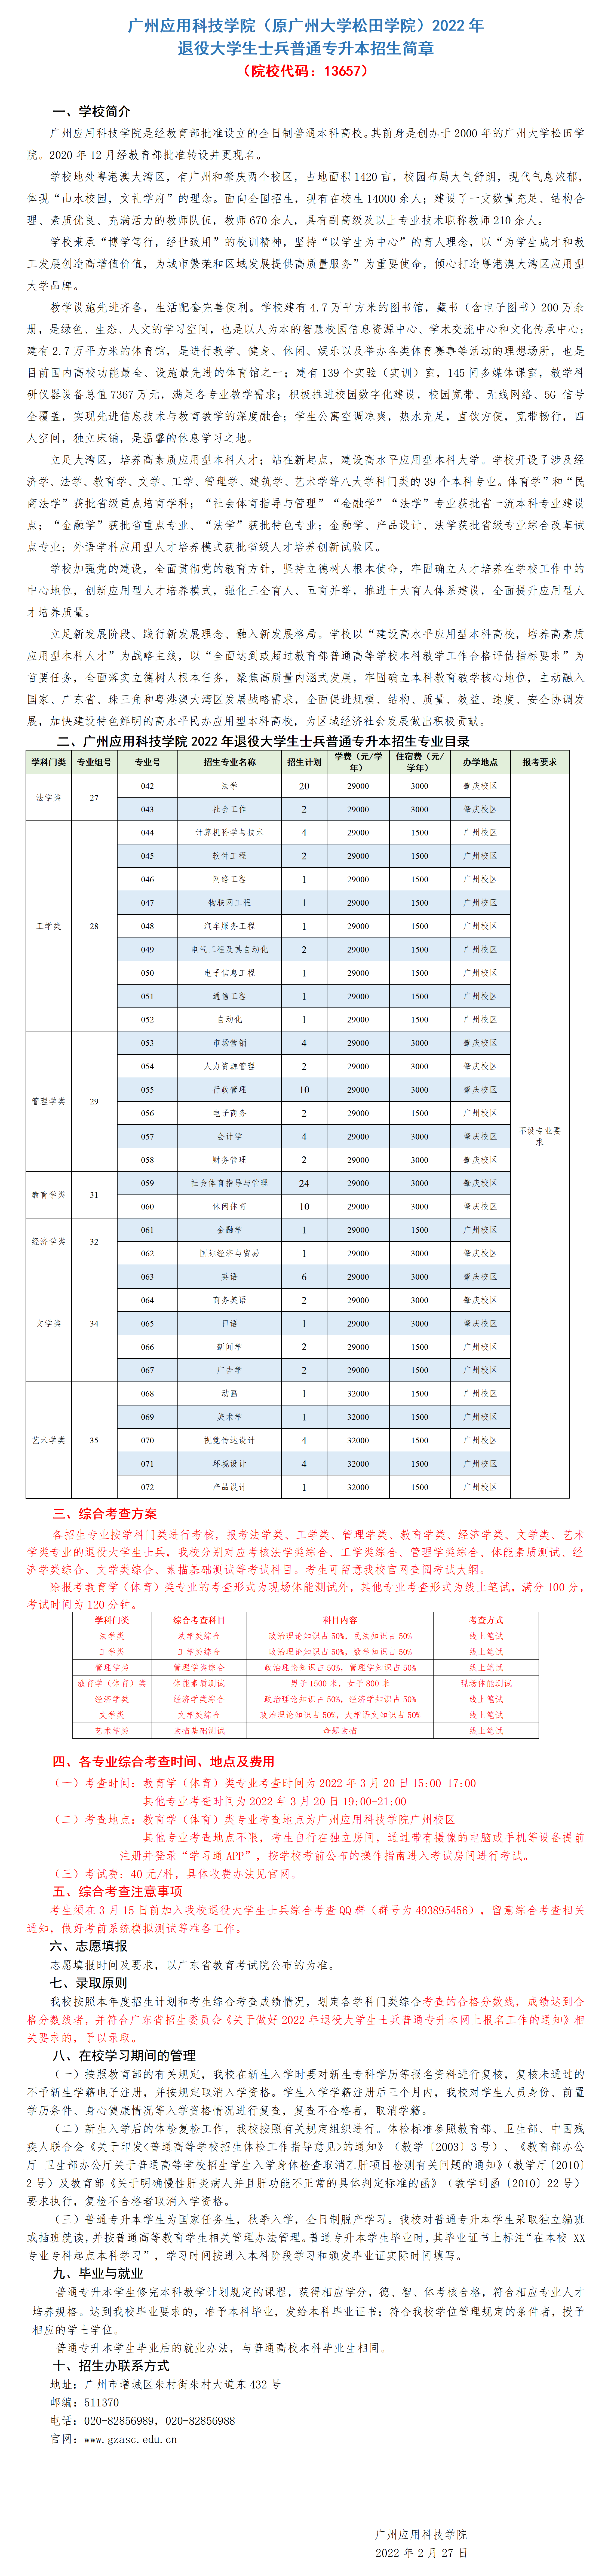 广州应用科技退役士兵 (2).png